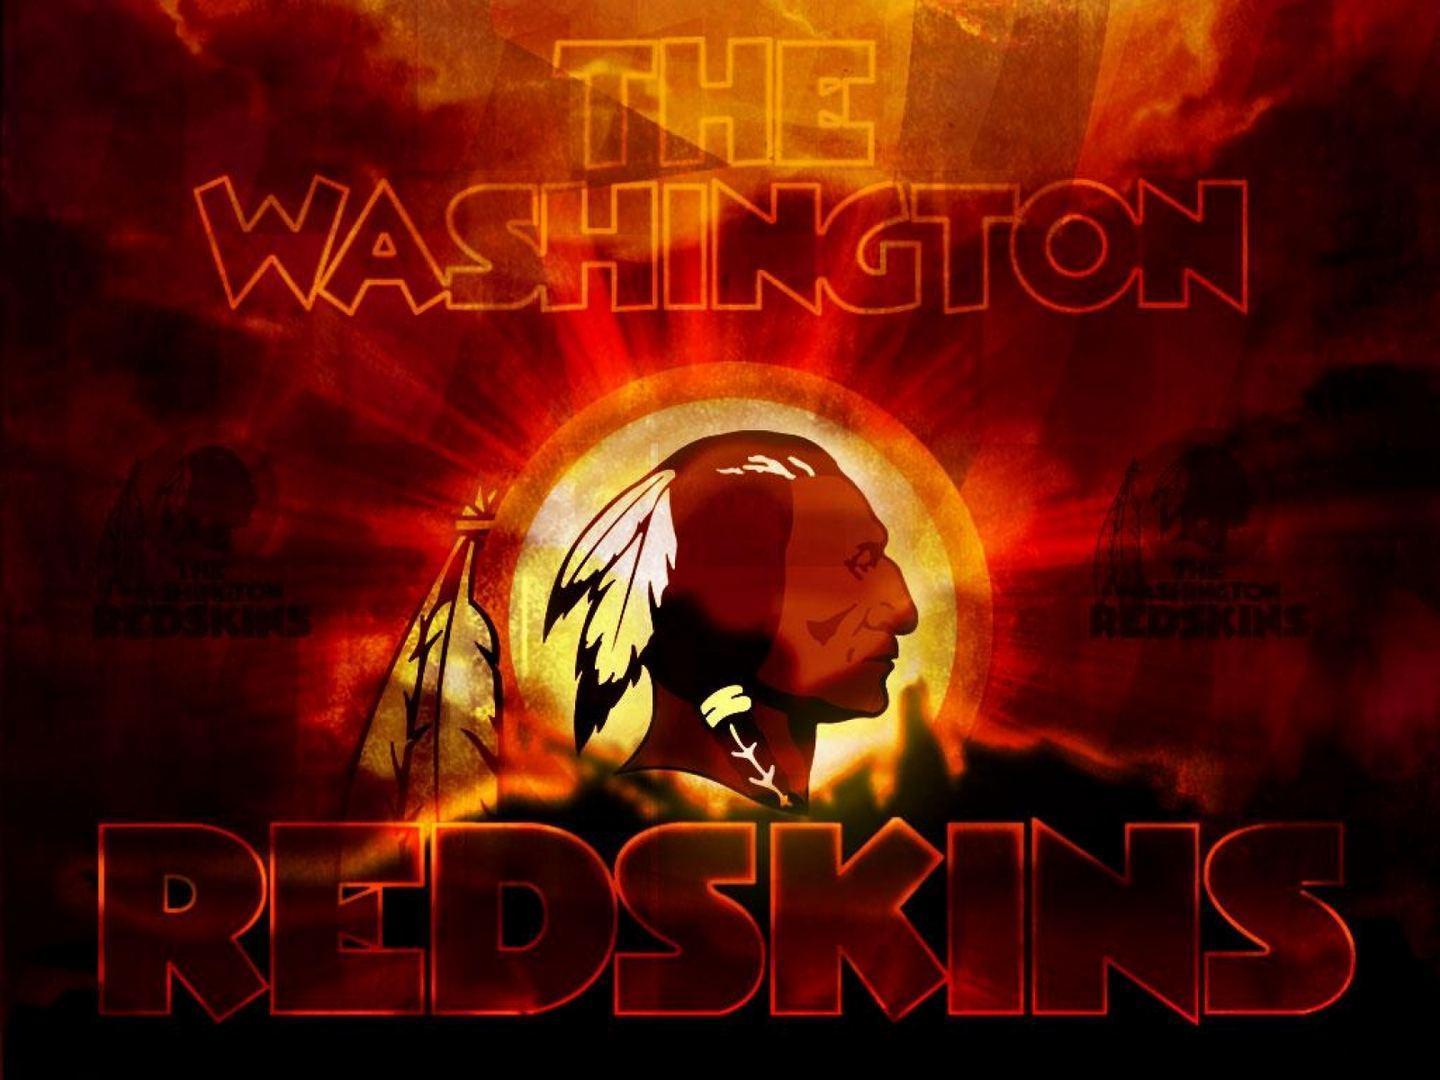 Washington Redskins wallpaper HD free download